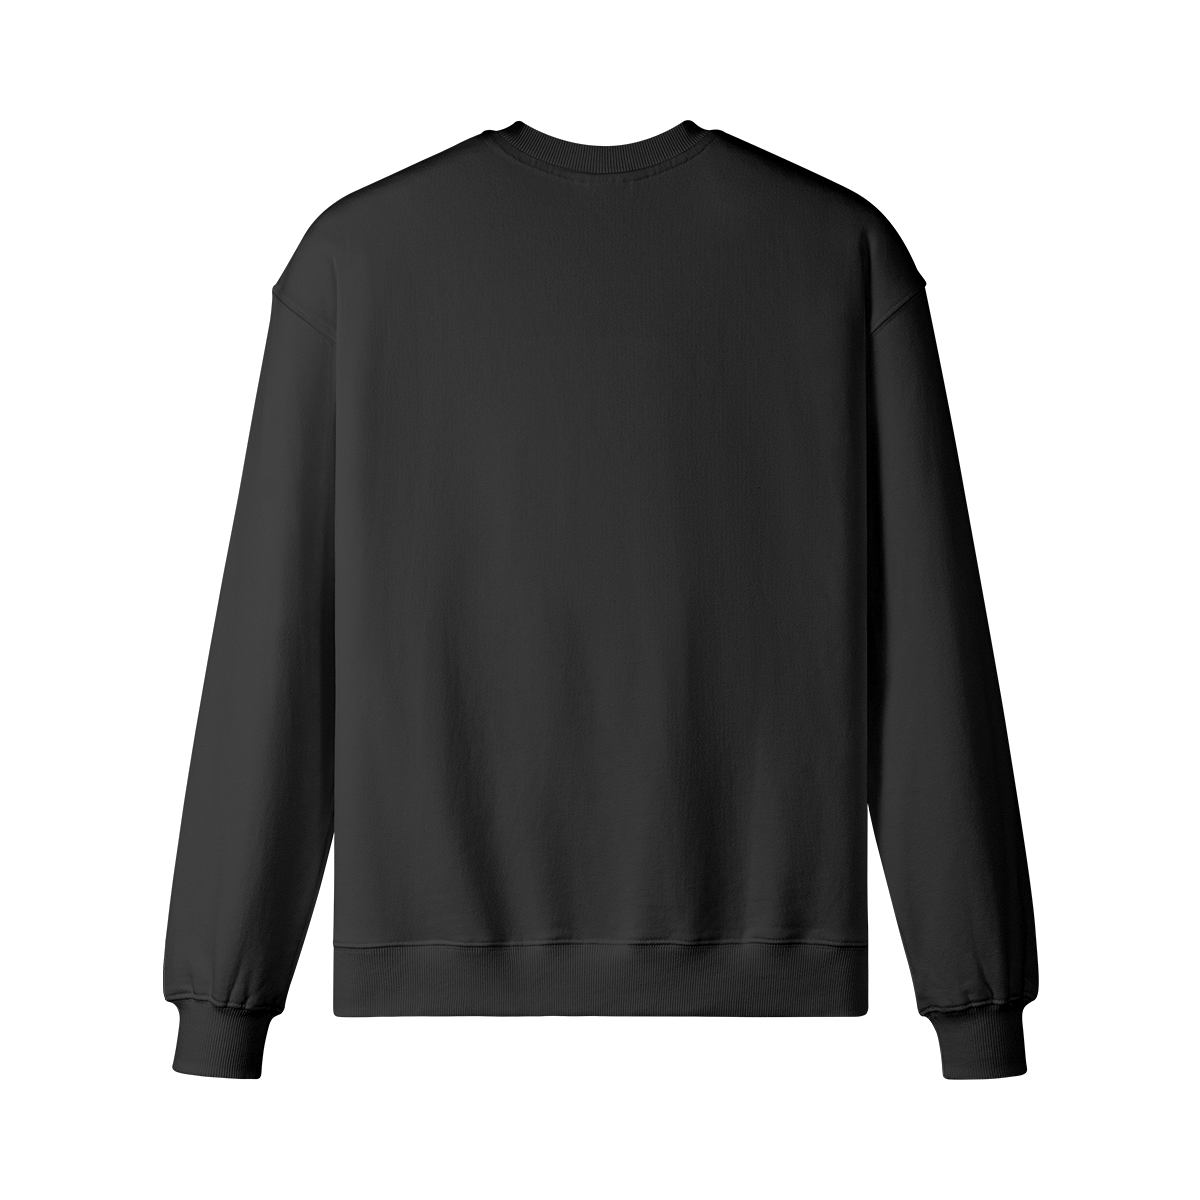 ENTITIES - Unisex Oversized Sweatshirt